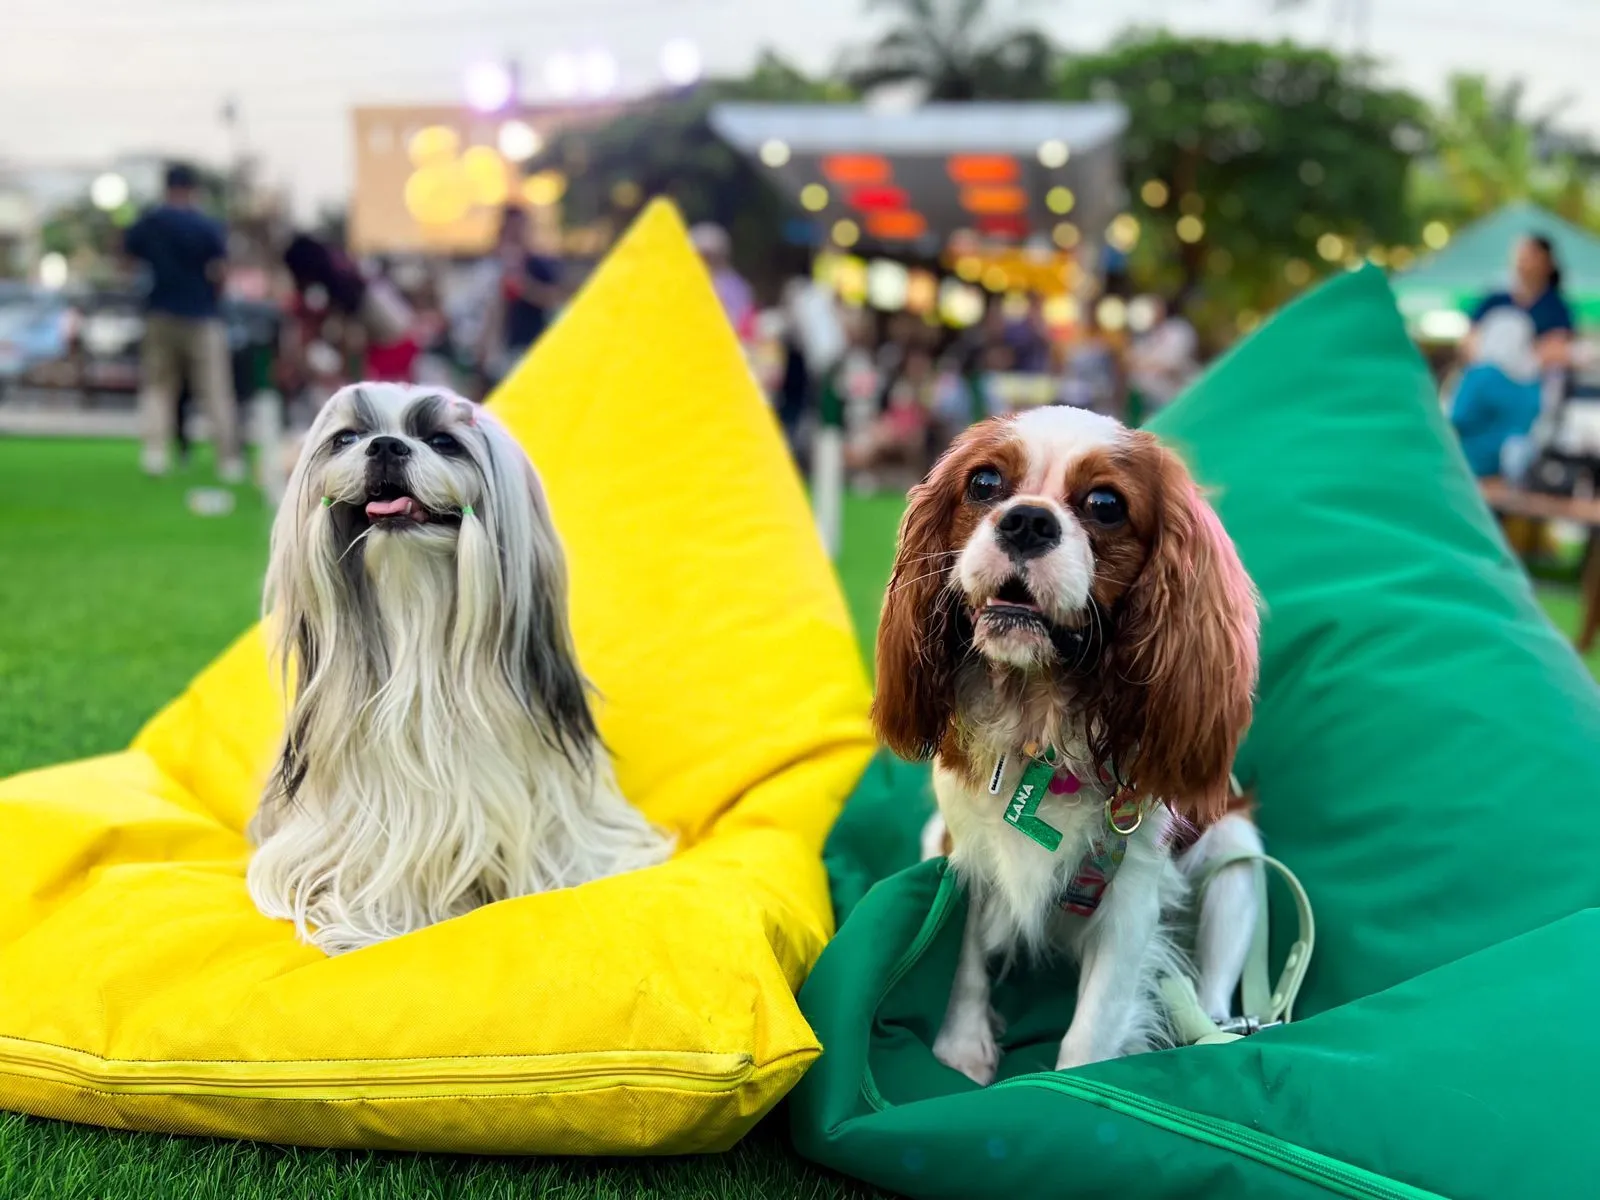 Paws Dog Dream Park: Tempat Seru untuk Bermain dengan 
Anabul